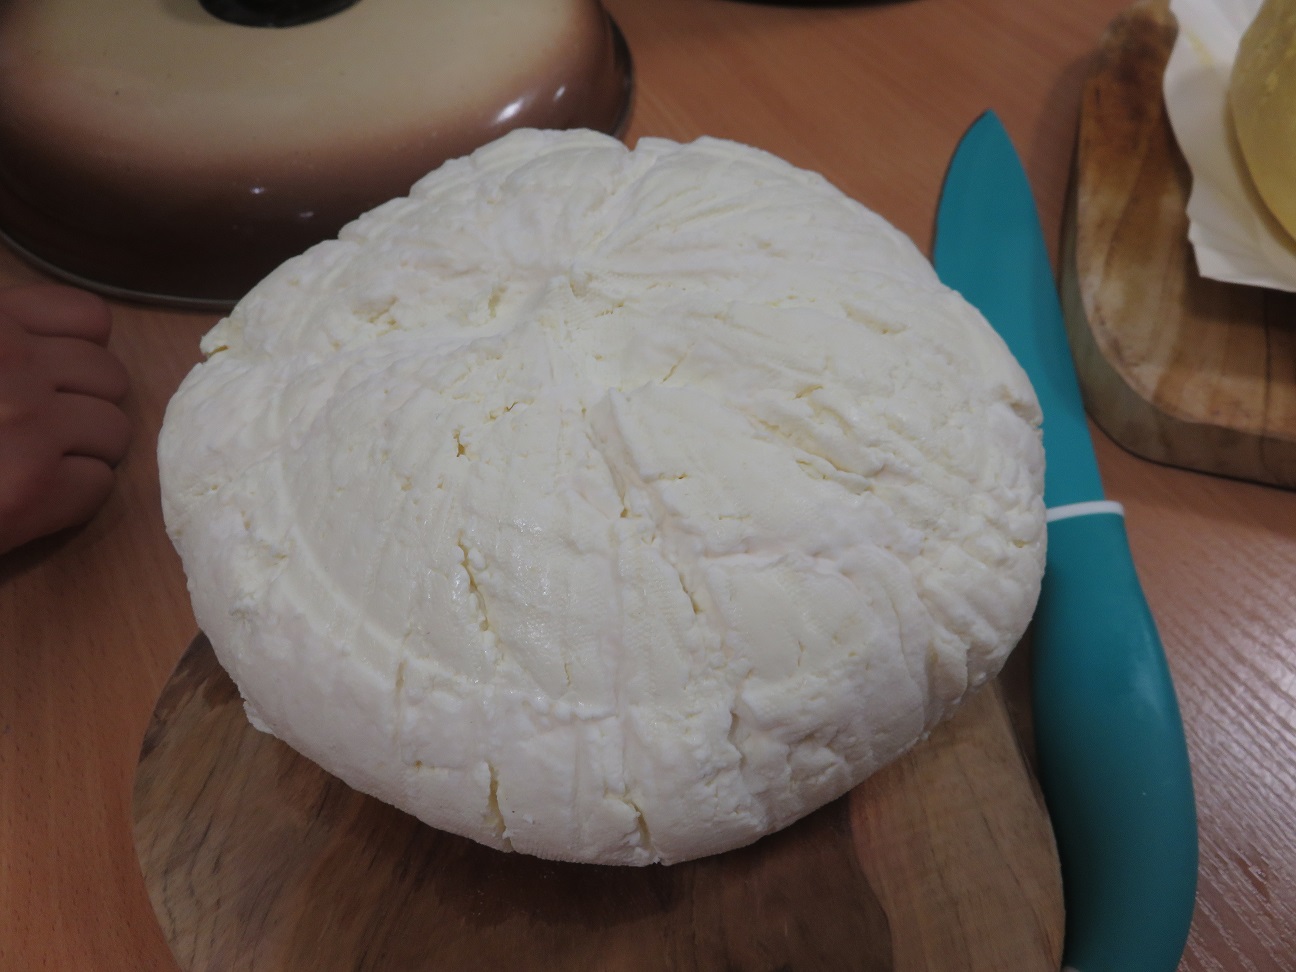 blok sera zrobiony własnoręcznie.